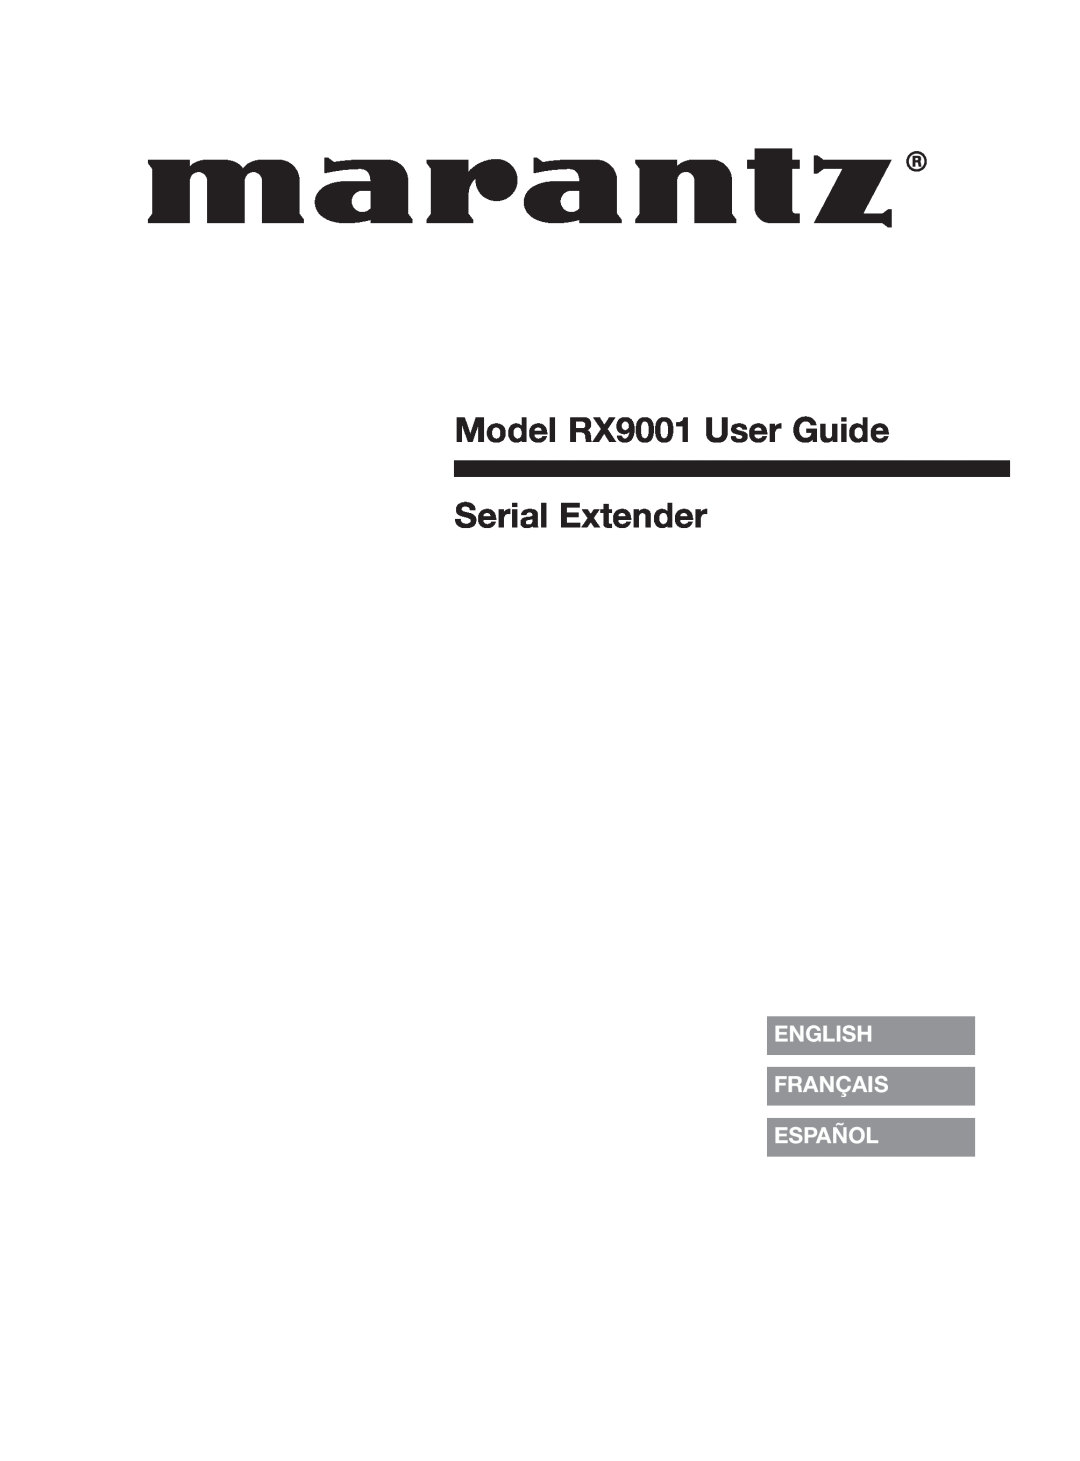 Marantz manual English Français Español, Model RX9001 User Guide Serial Extender 